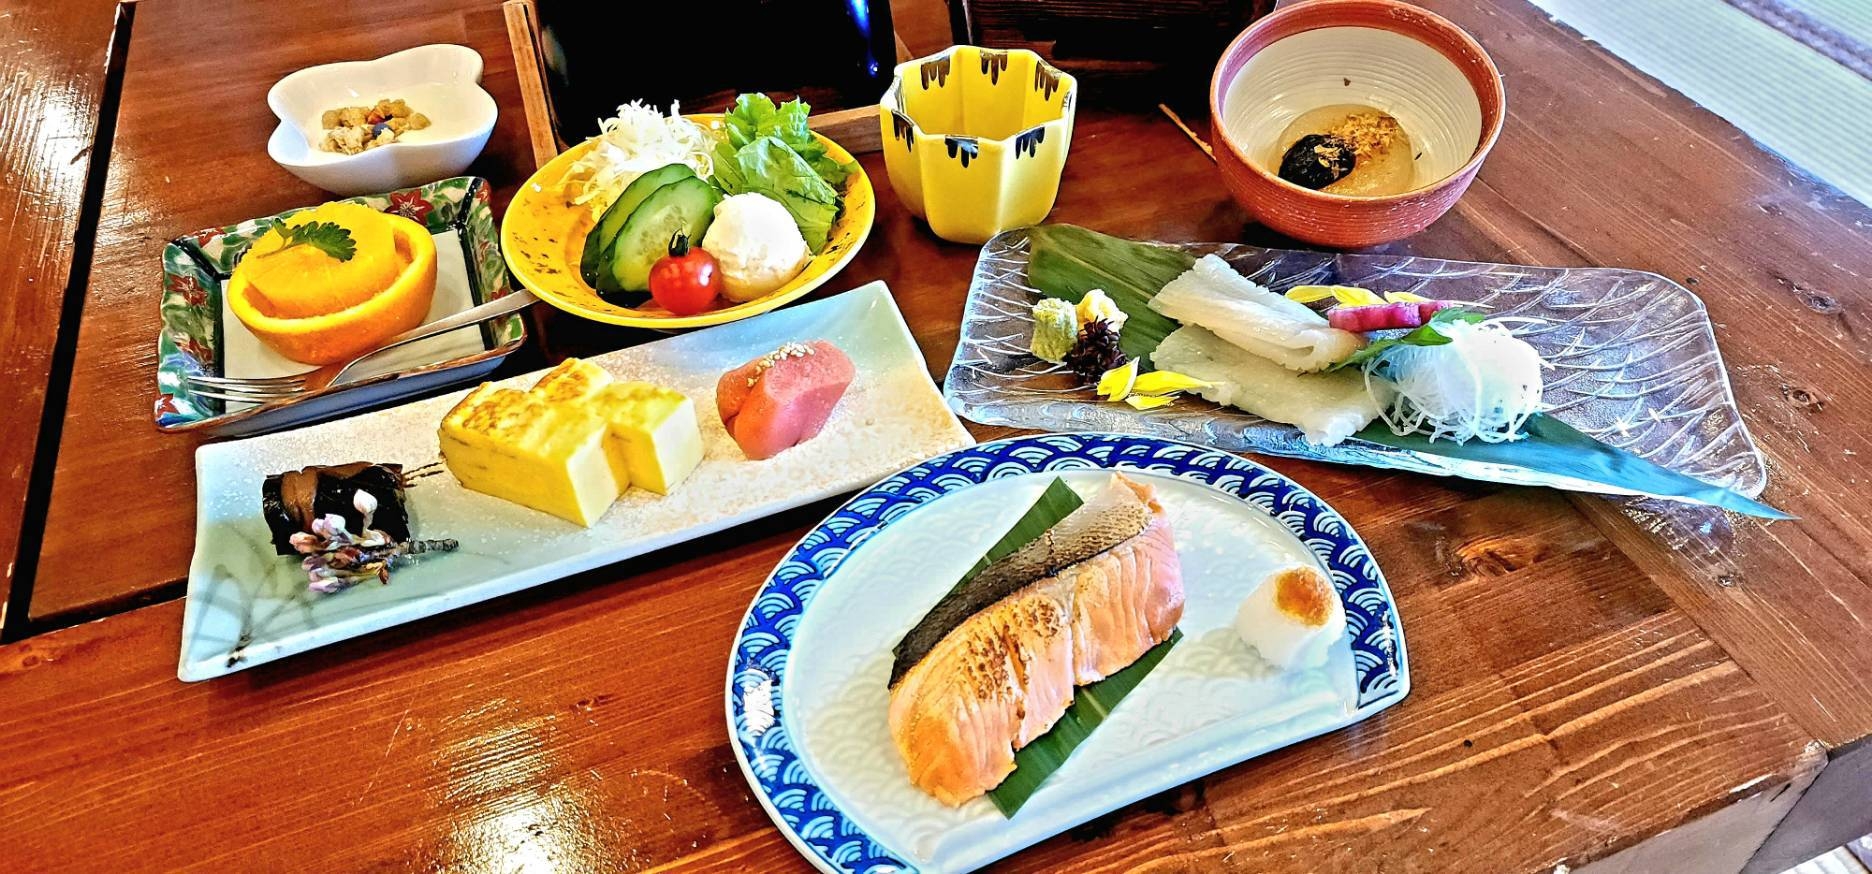 【和食会席膳プラン】北海道の旬が詰まった料理をお楽しみください【マッサージチェア付ツインルーム】